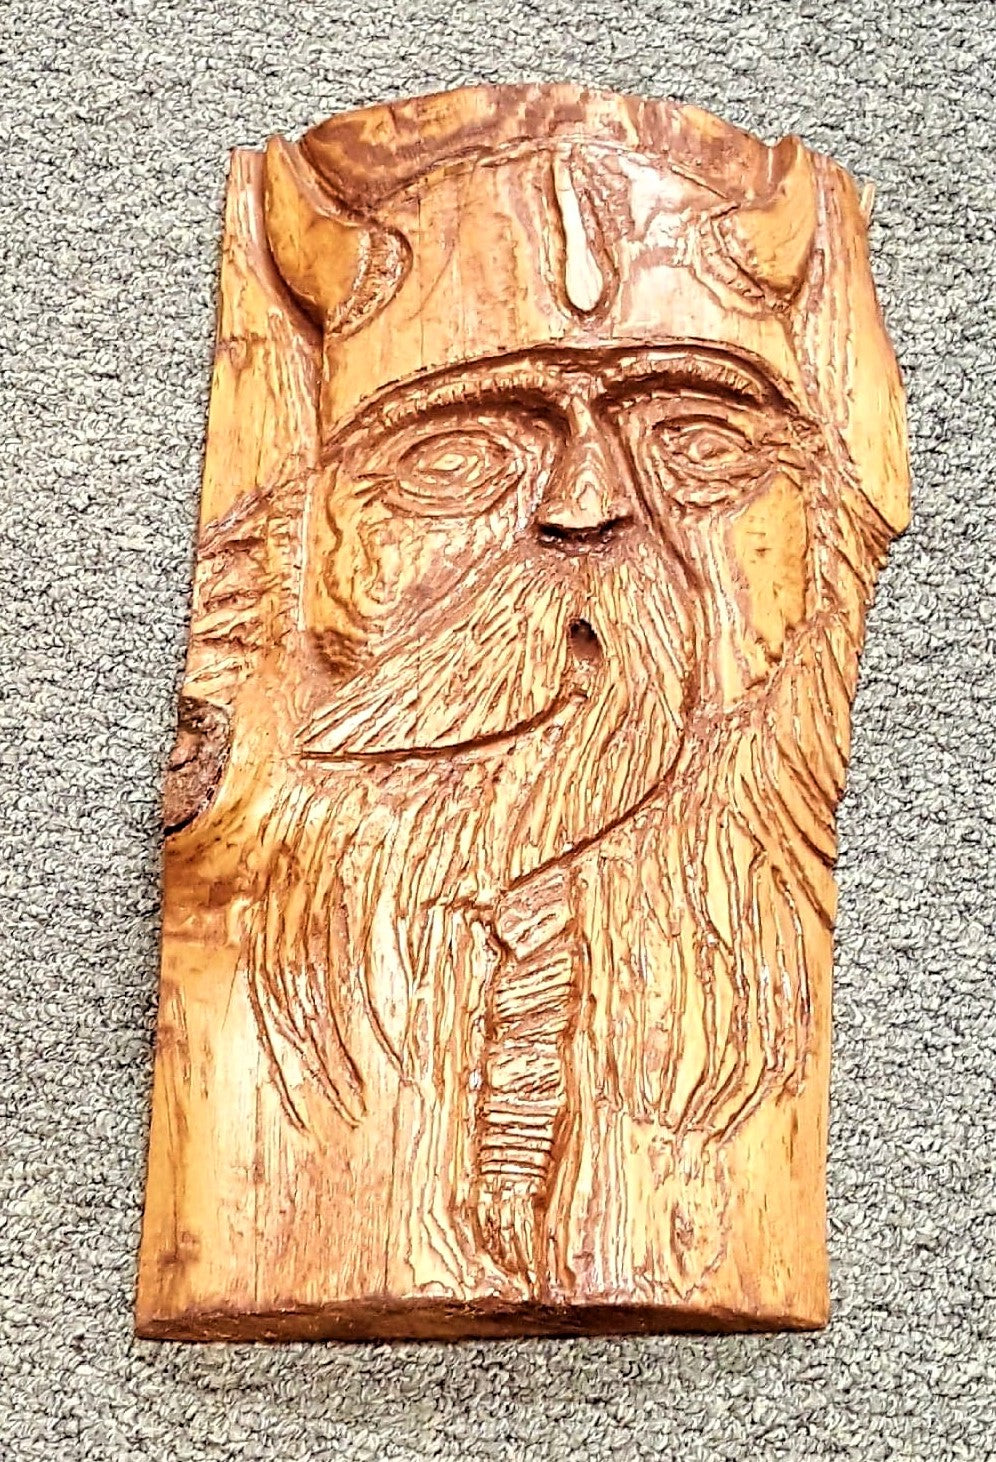 Wood Carving, medium - ON SALE!